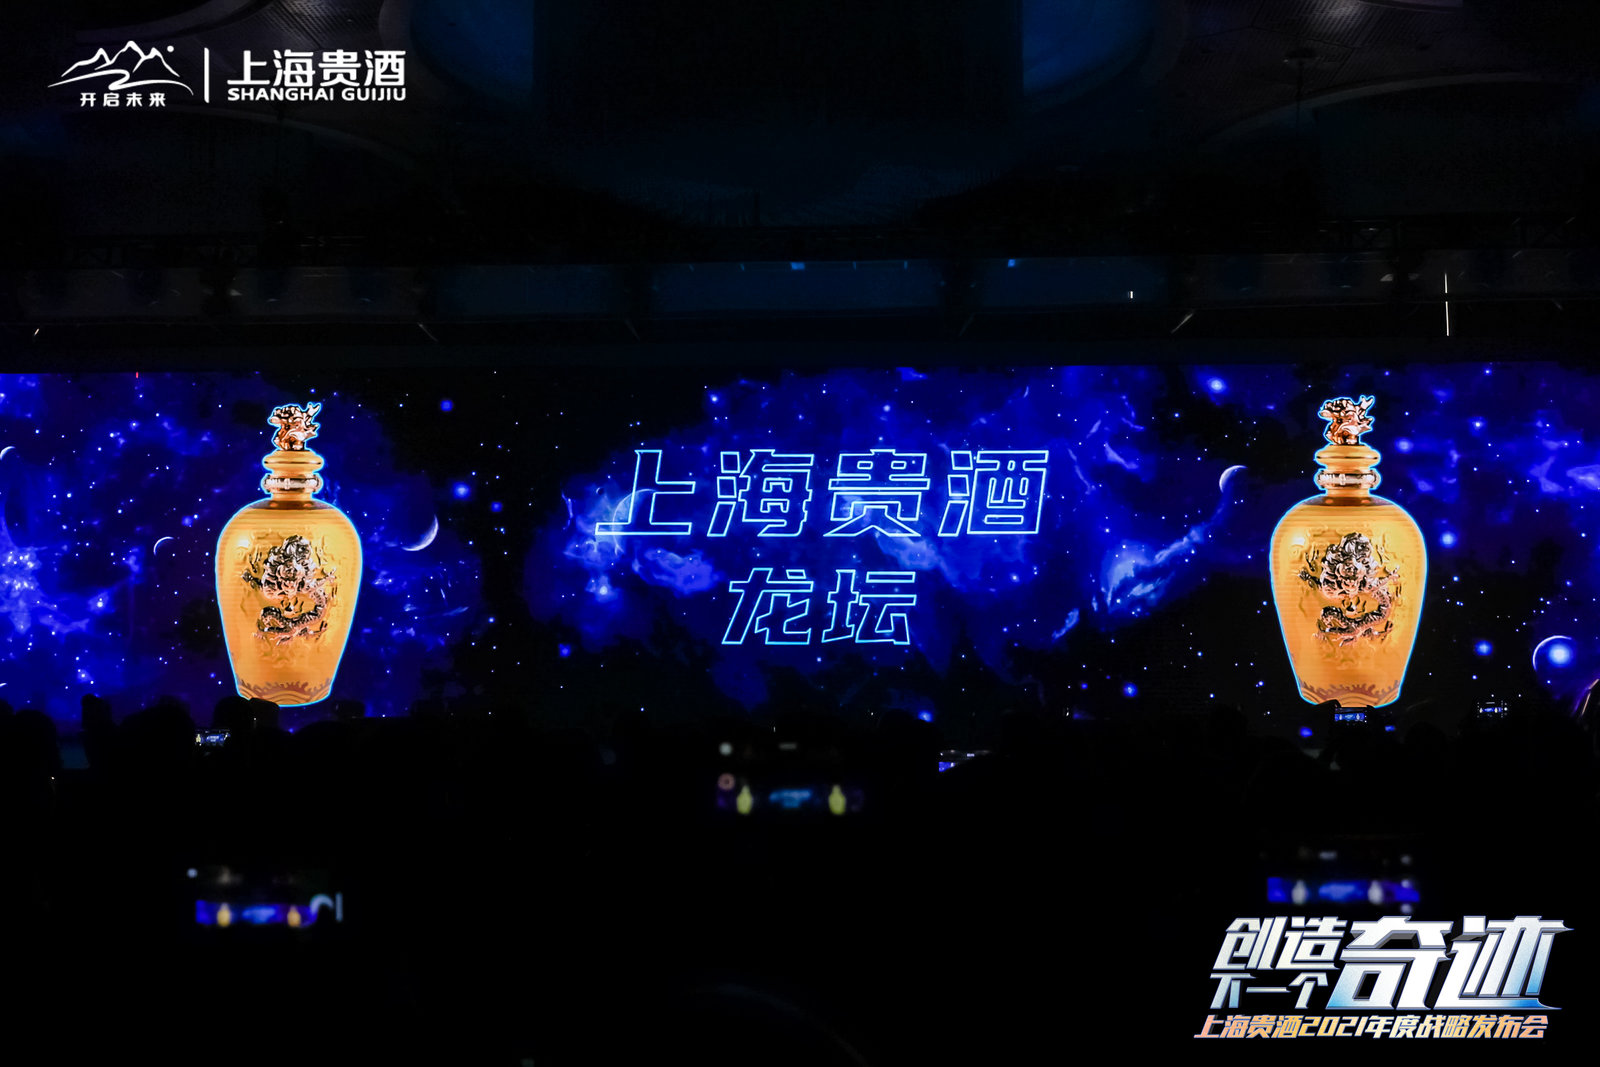 上海贵酒2021年度战略发布|全息开场|激光雕刻科技创意秀